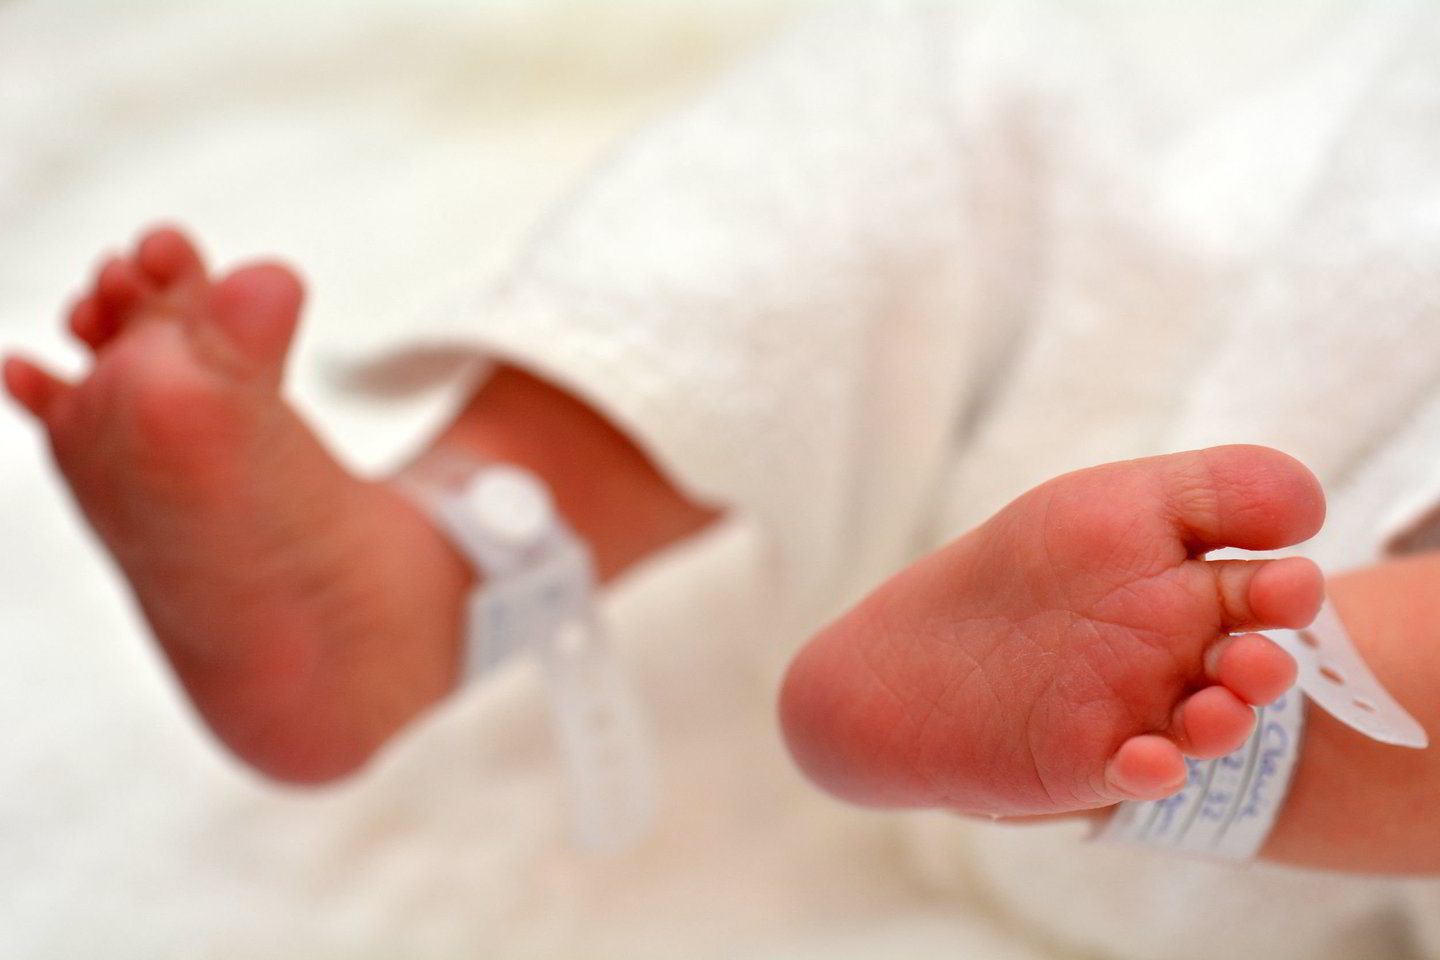  Australė Jayde Lawrence pagimdė kūdikį praėjus 15 minučių po to, kai sužinojo, kad ji nėščia.<br> 123RF nuotr.